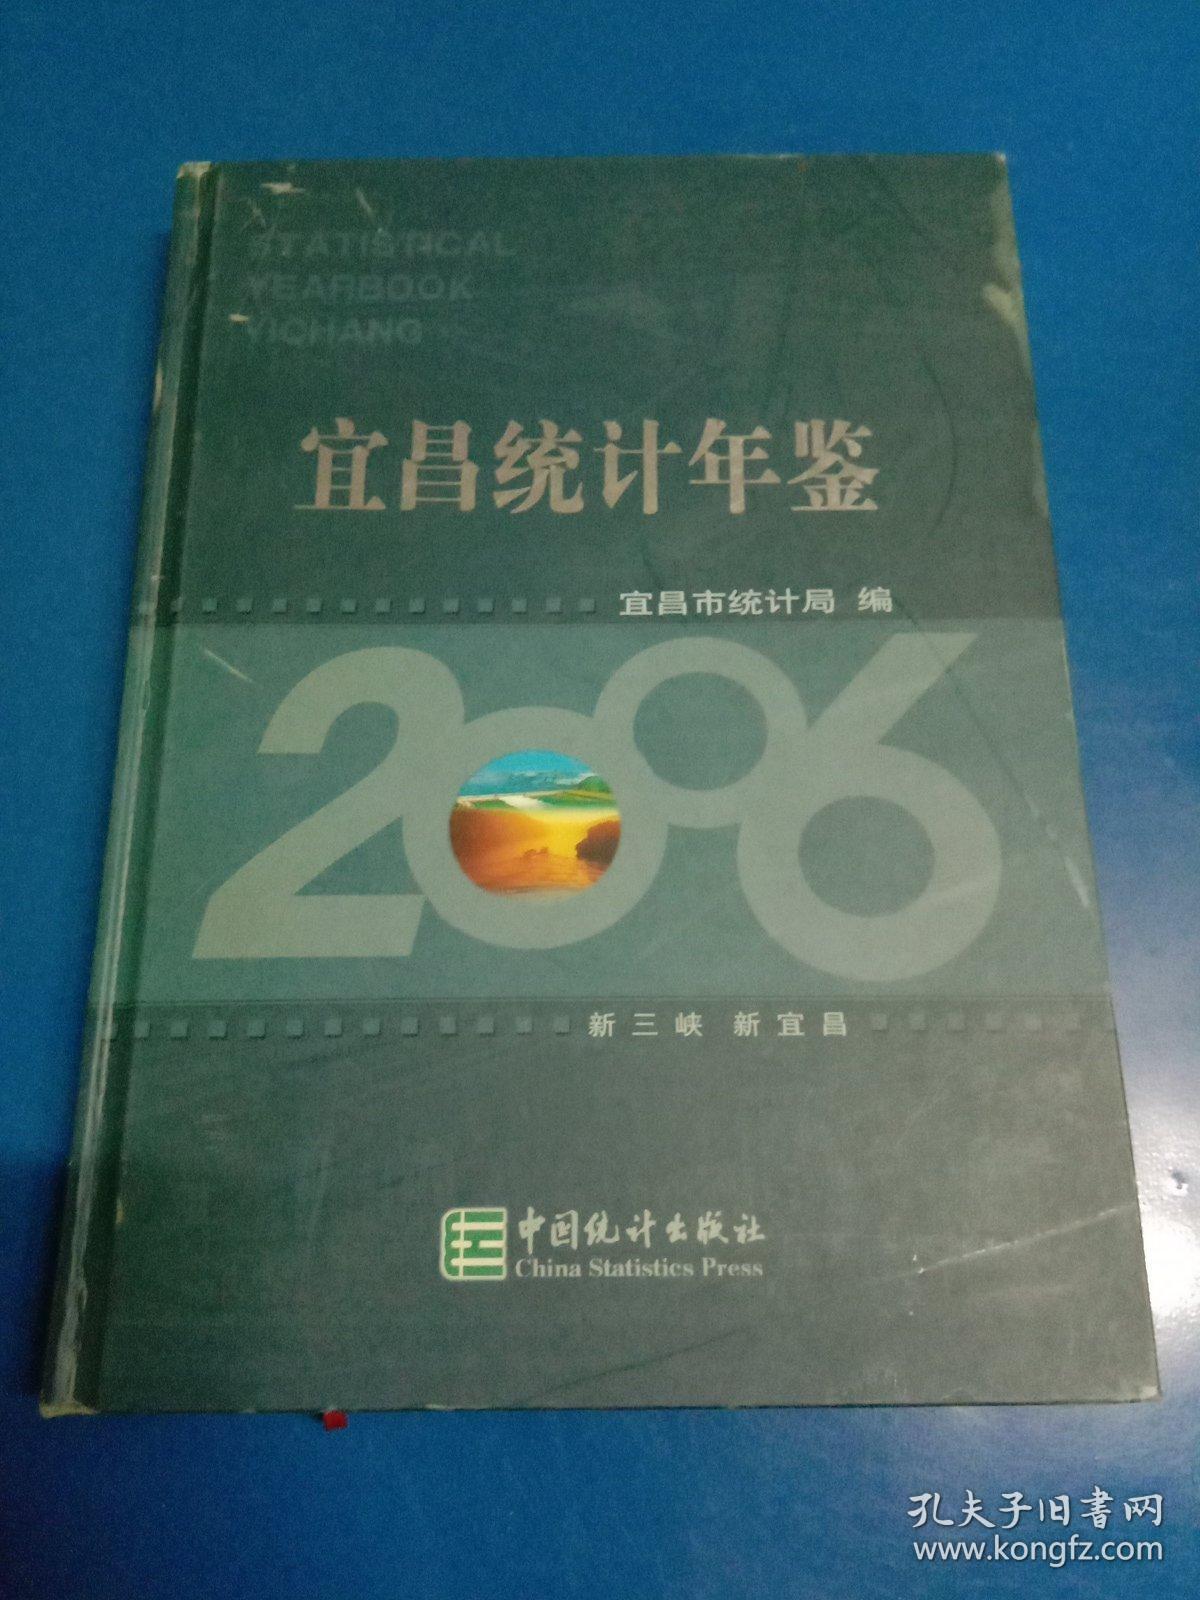 宜昌统计年鉴(2006) 190411